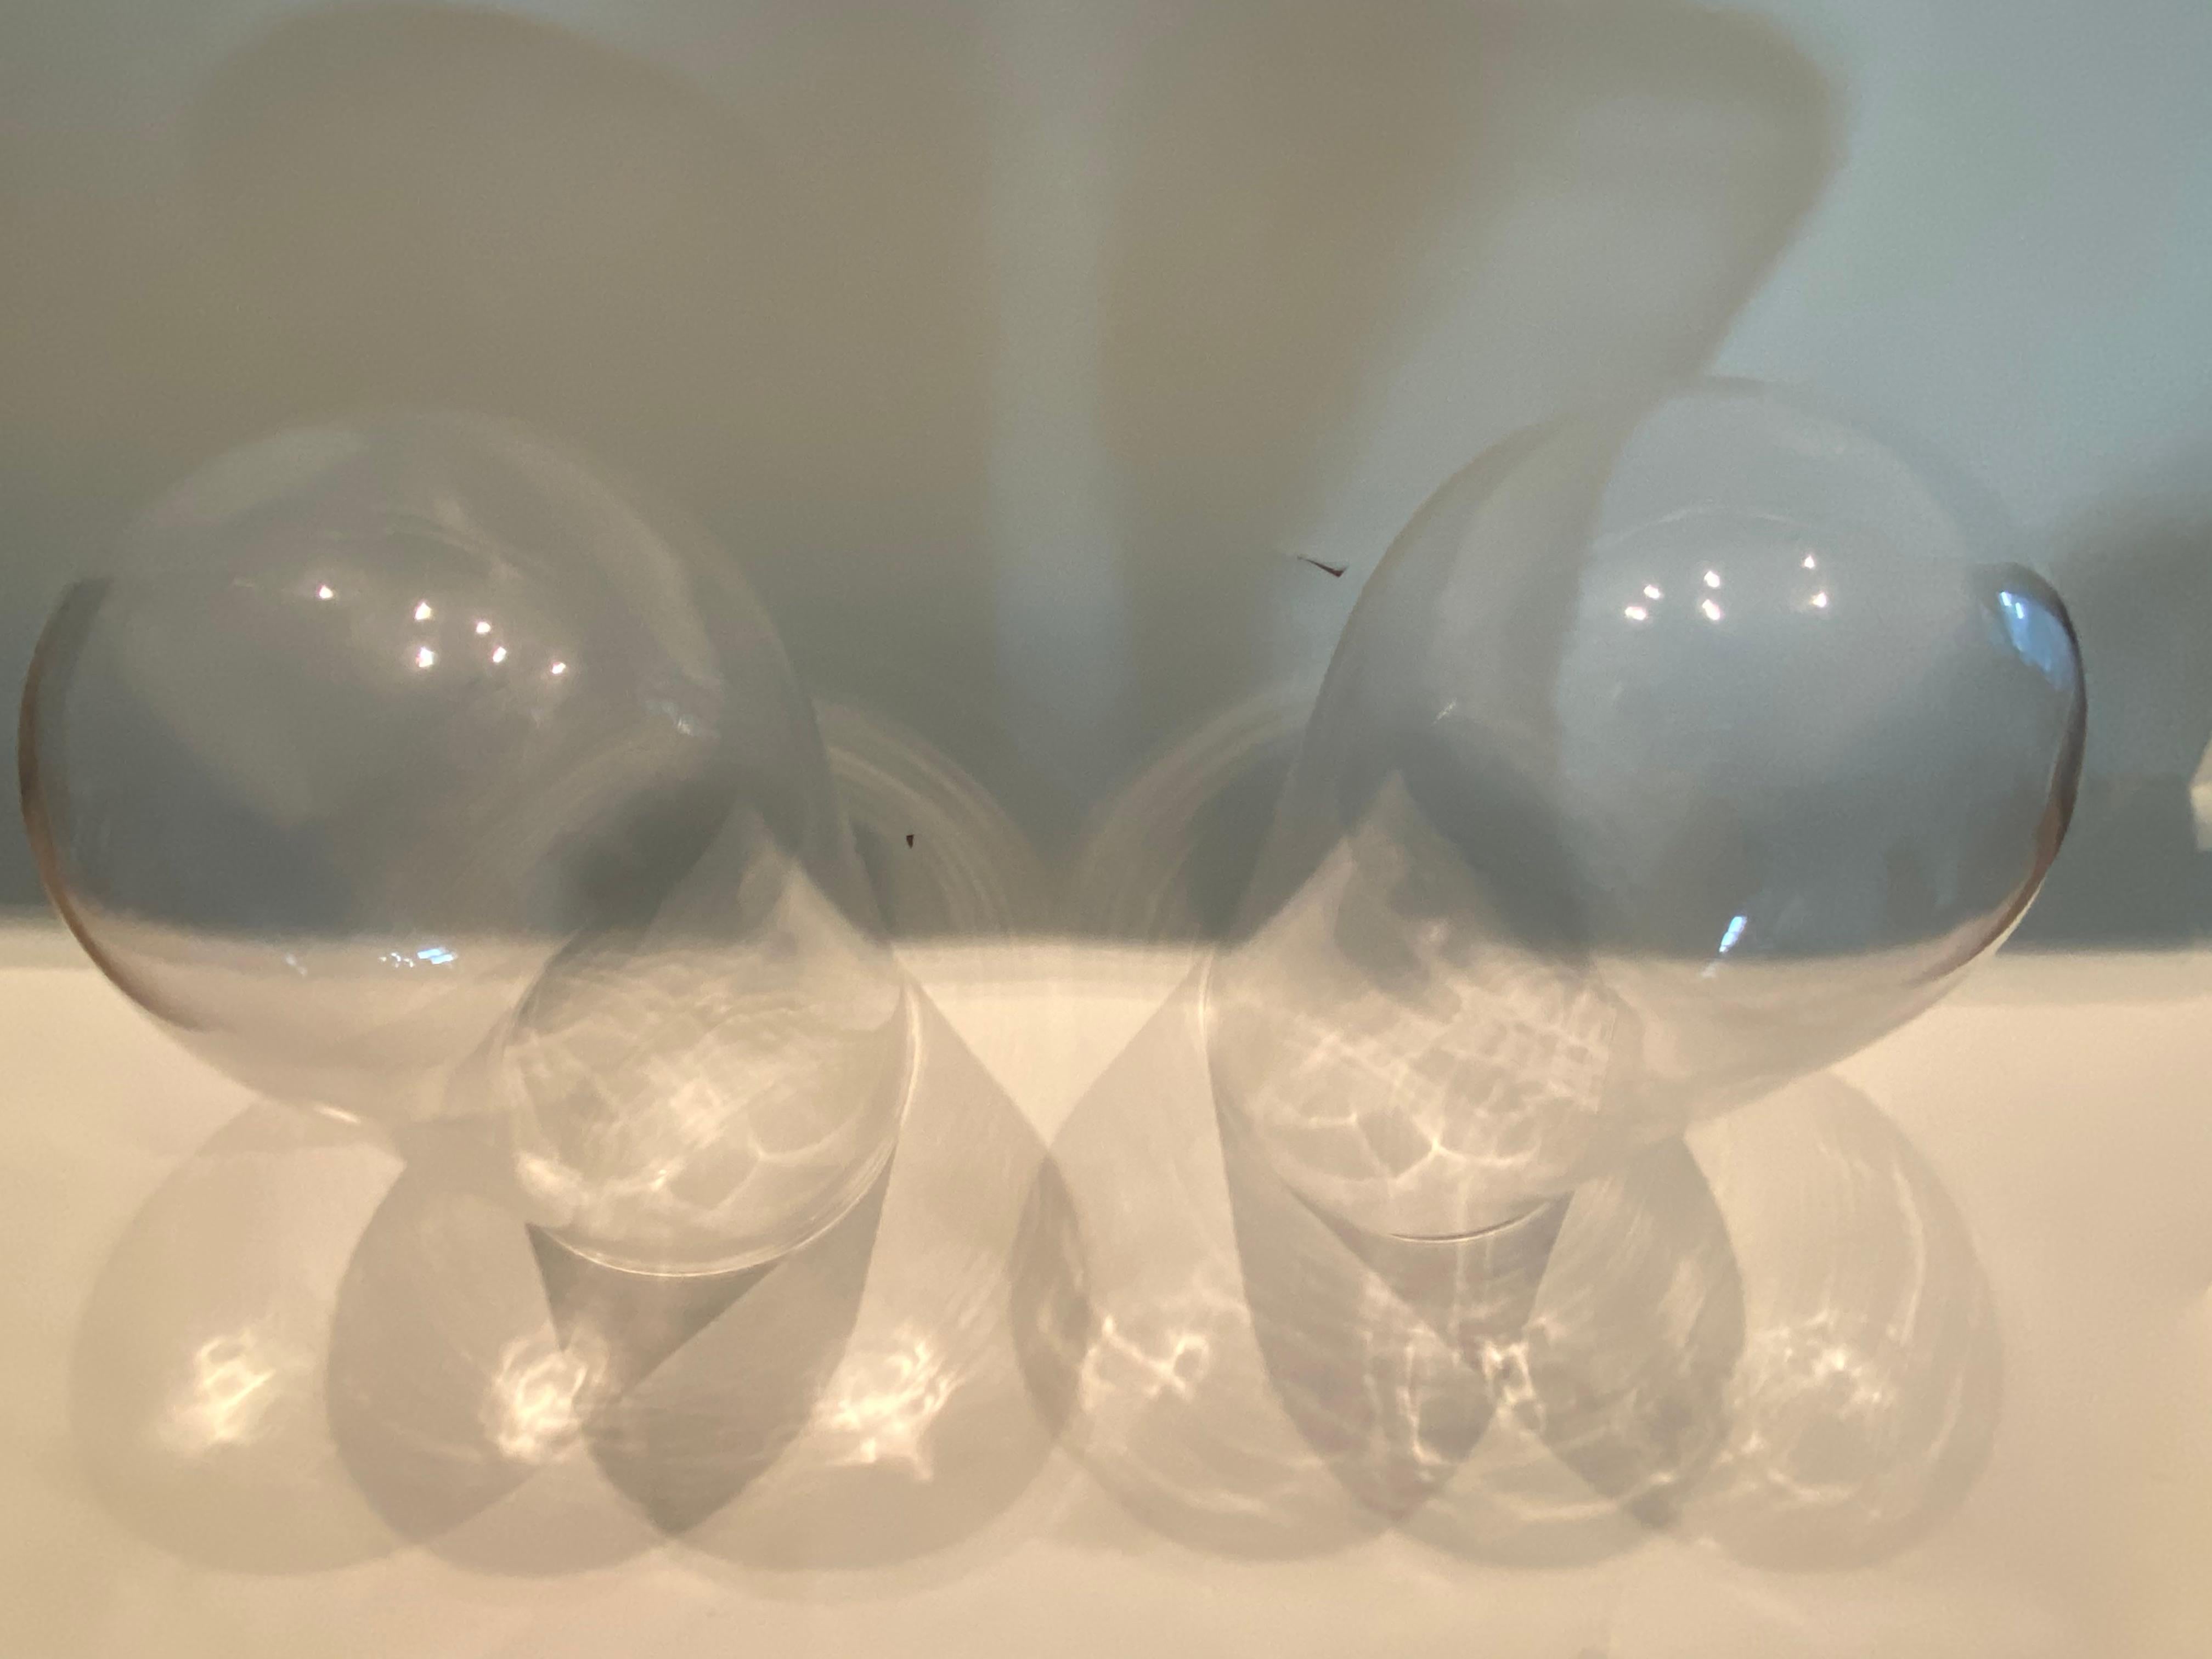 Dieses Paar hoher Glaskuppeln oder Cloches eignet sich perfekt für die Präsentation zerbrechlicher Kunstwerke, Uhren oder botanischer Pflanzen.  Die Fotos erscheinen dunkel, aber diese Kuppeln sind aus klarem Glas.